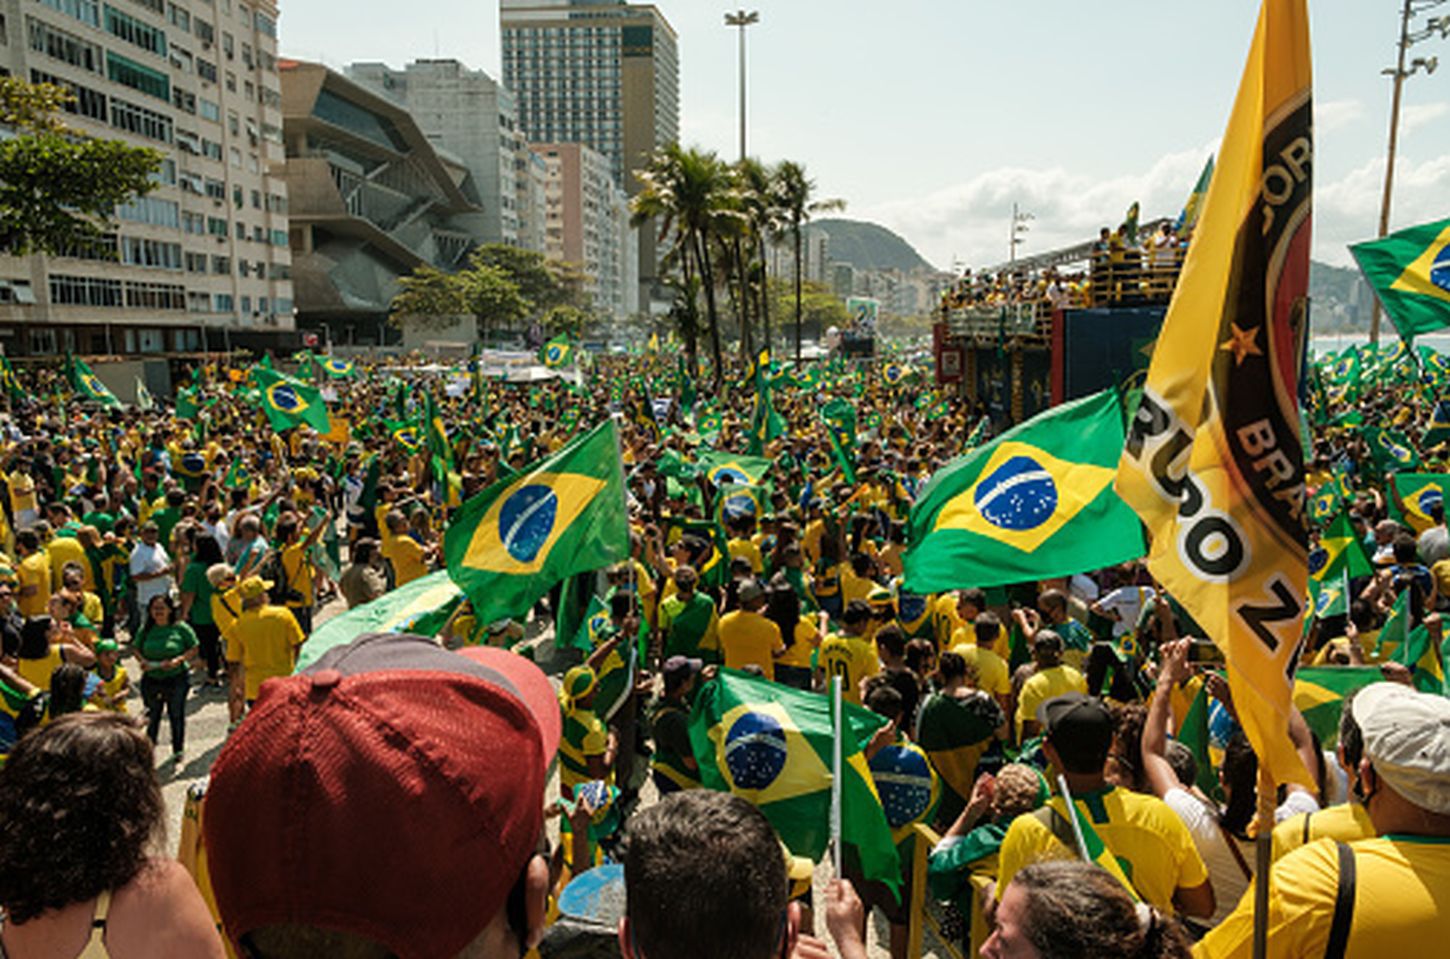 Brasil fans